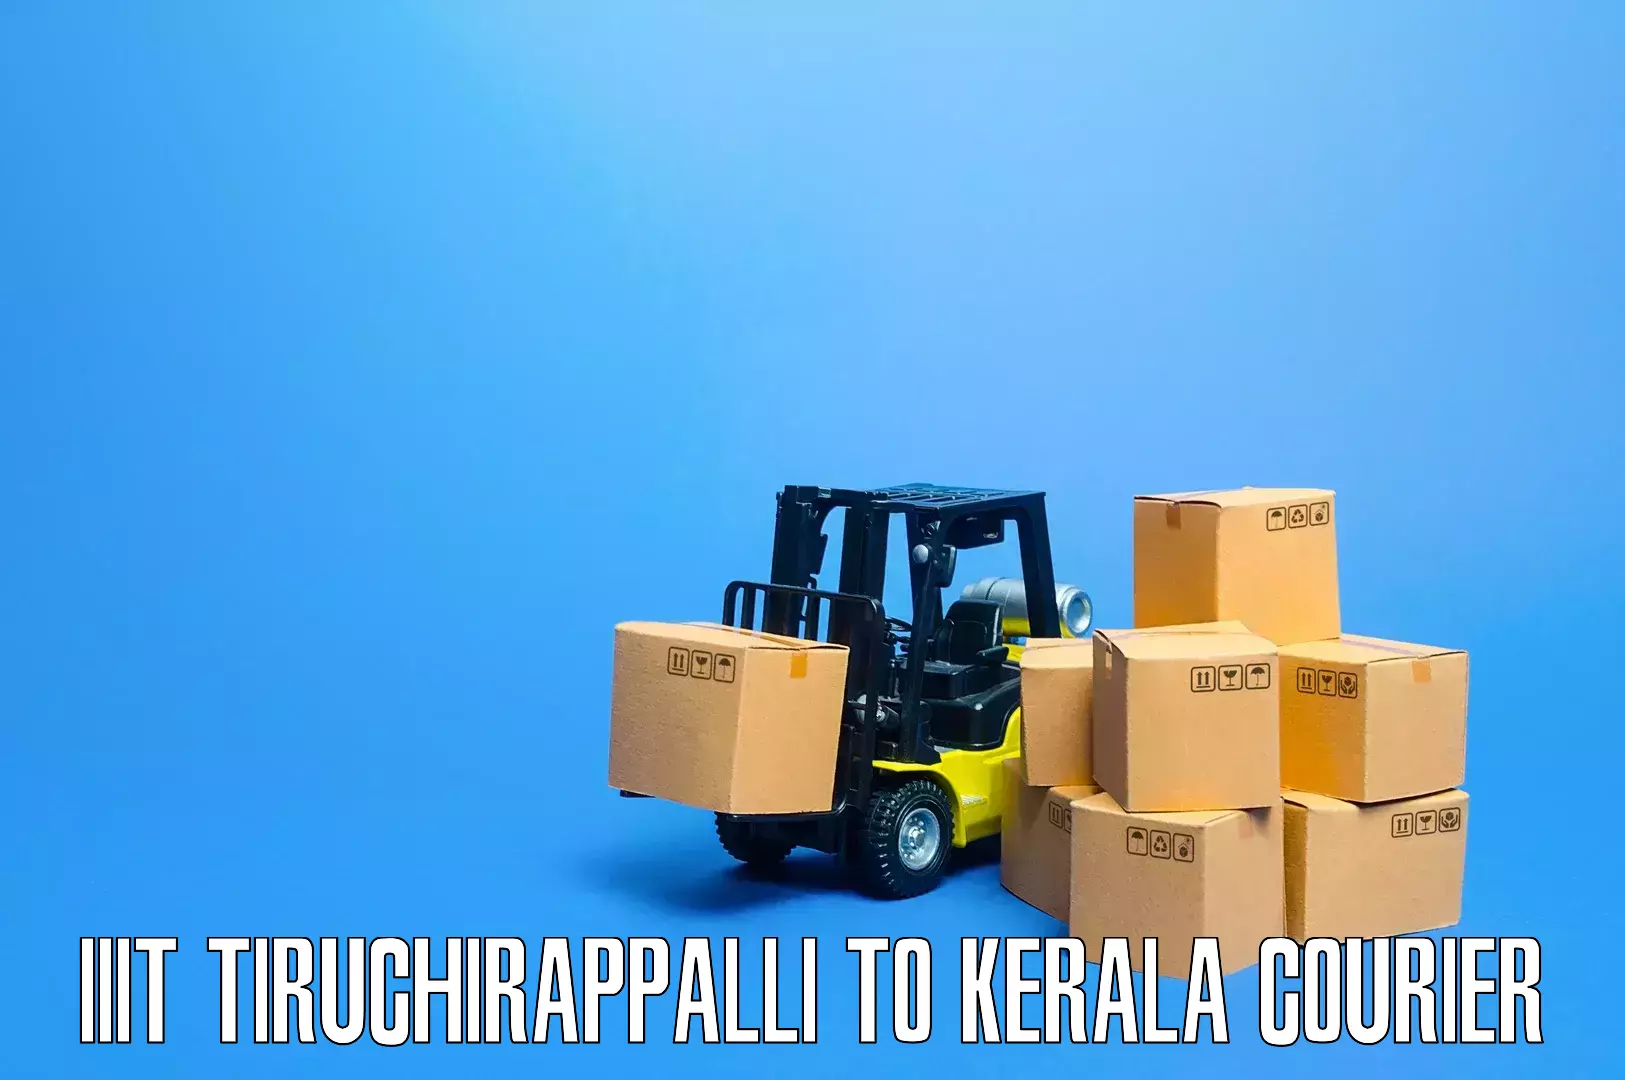 Safe household movers IIIT Tiruchirappalli to Taliparamba